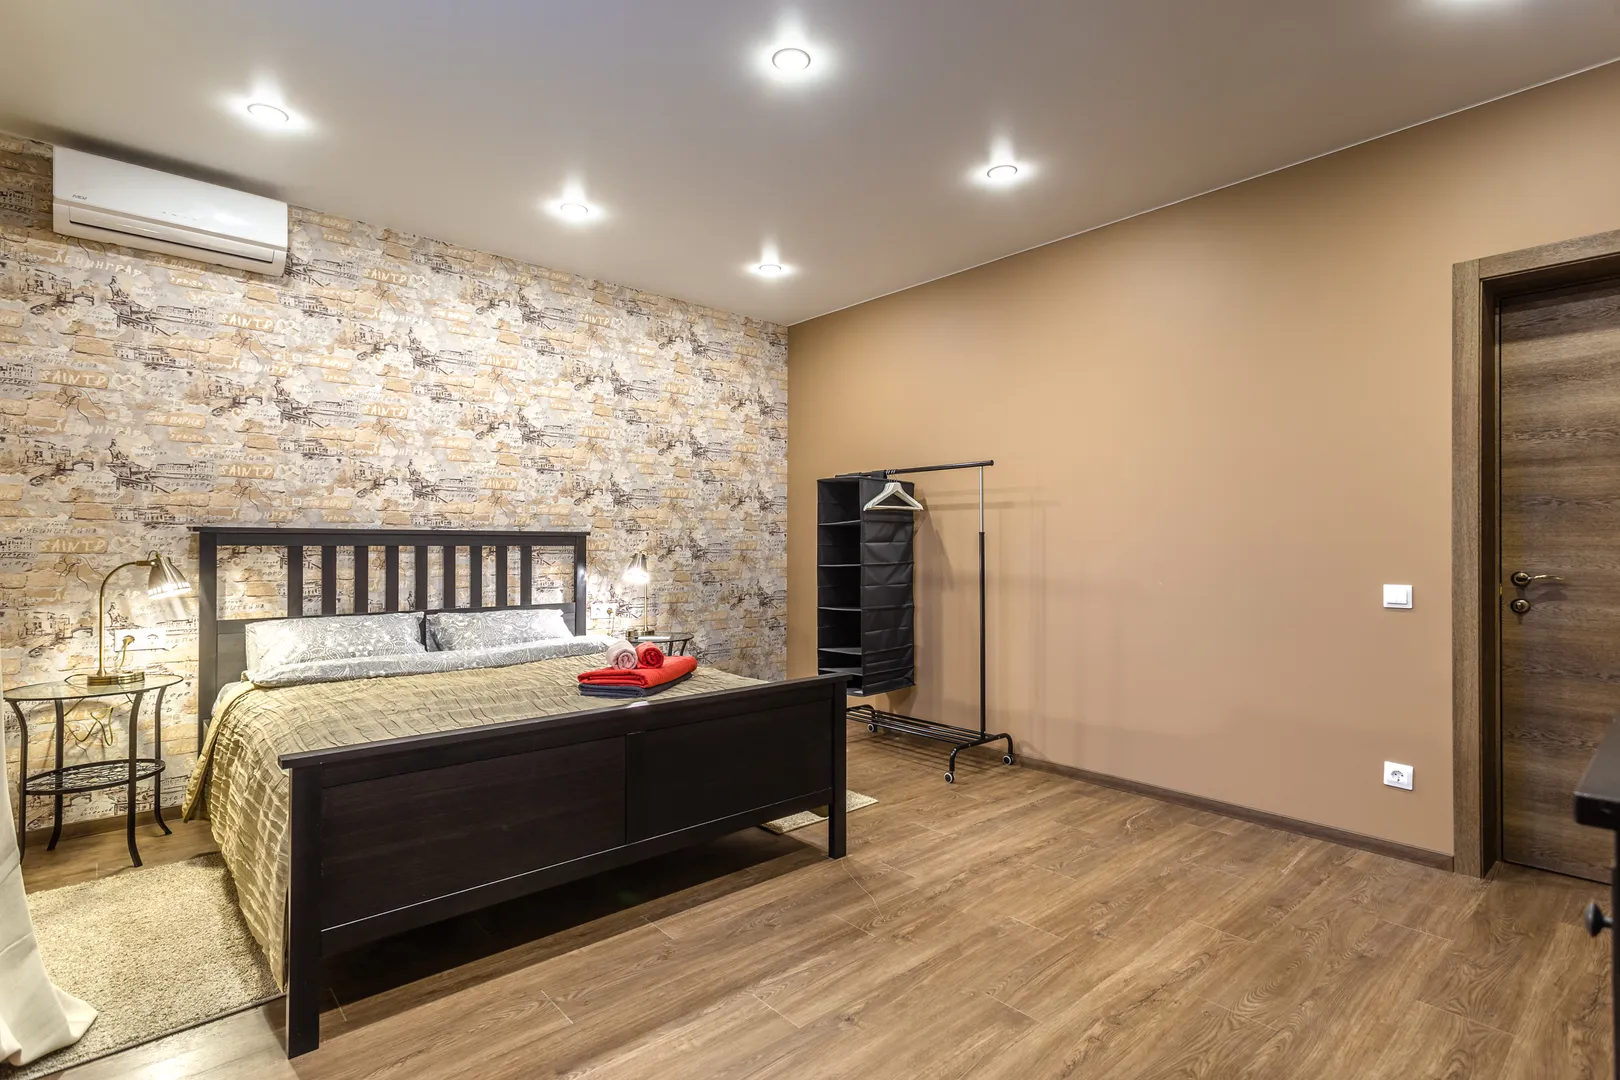 Первая спальня с кроватью шириной 160 см, стеклянными прикроватными столиками и светильниками, вешалкой для вашей одежды, кондиционером.